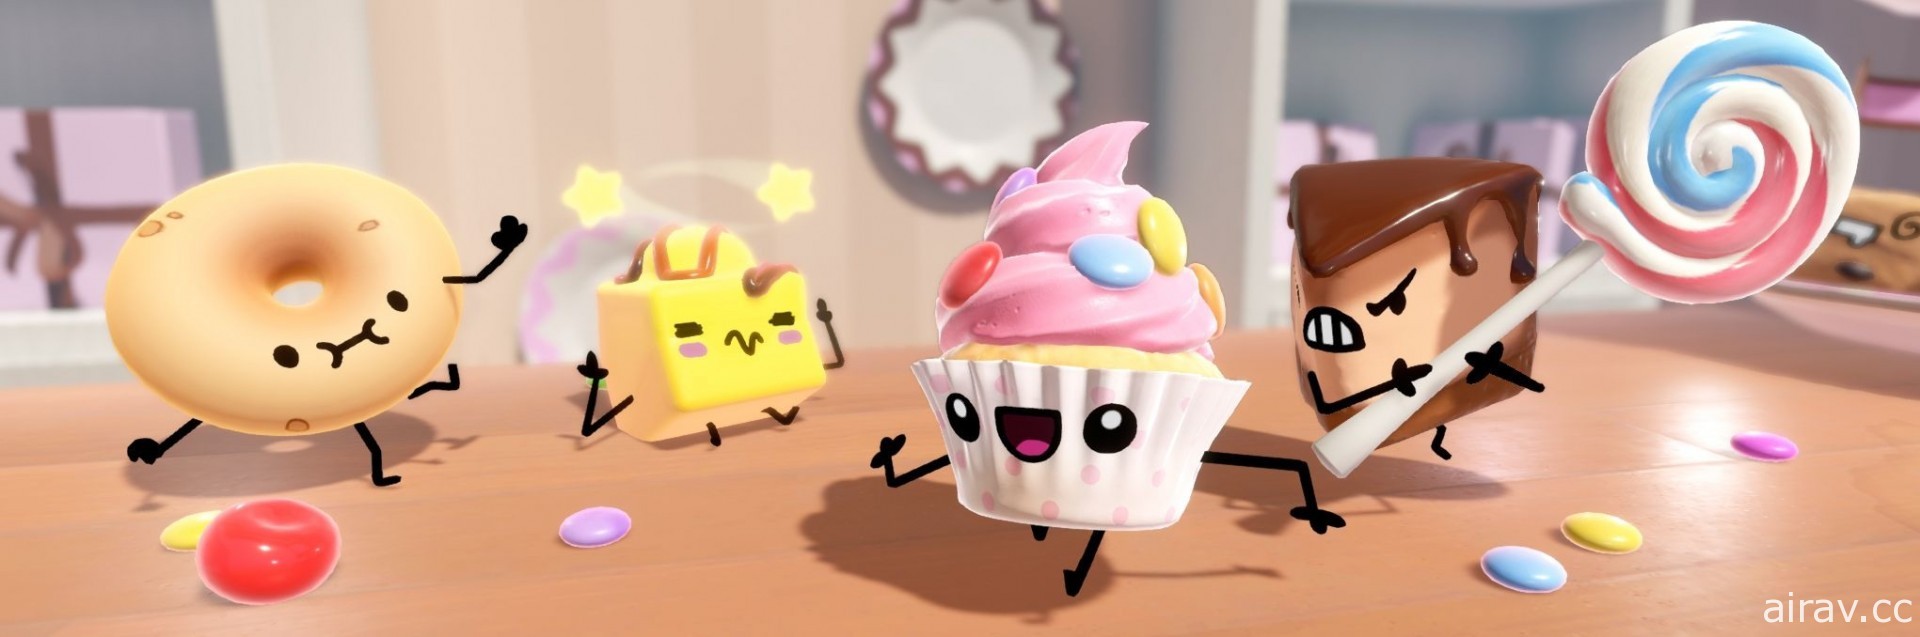 四人同乐派对游戏《糕点乱斗 Cake Bash》10 月中发售 目标成为最美味蛋糕！